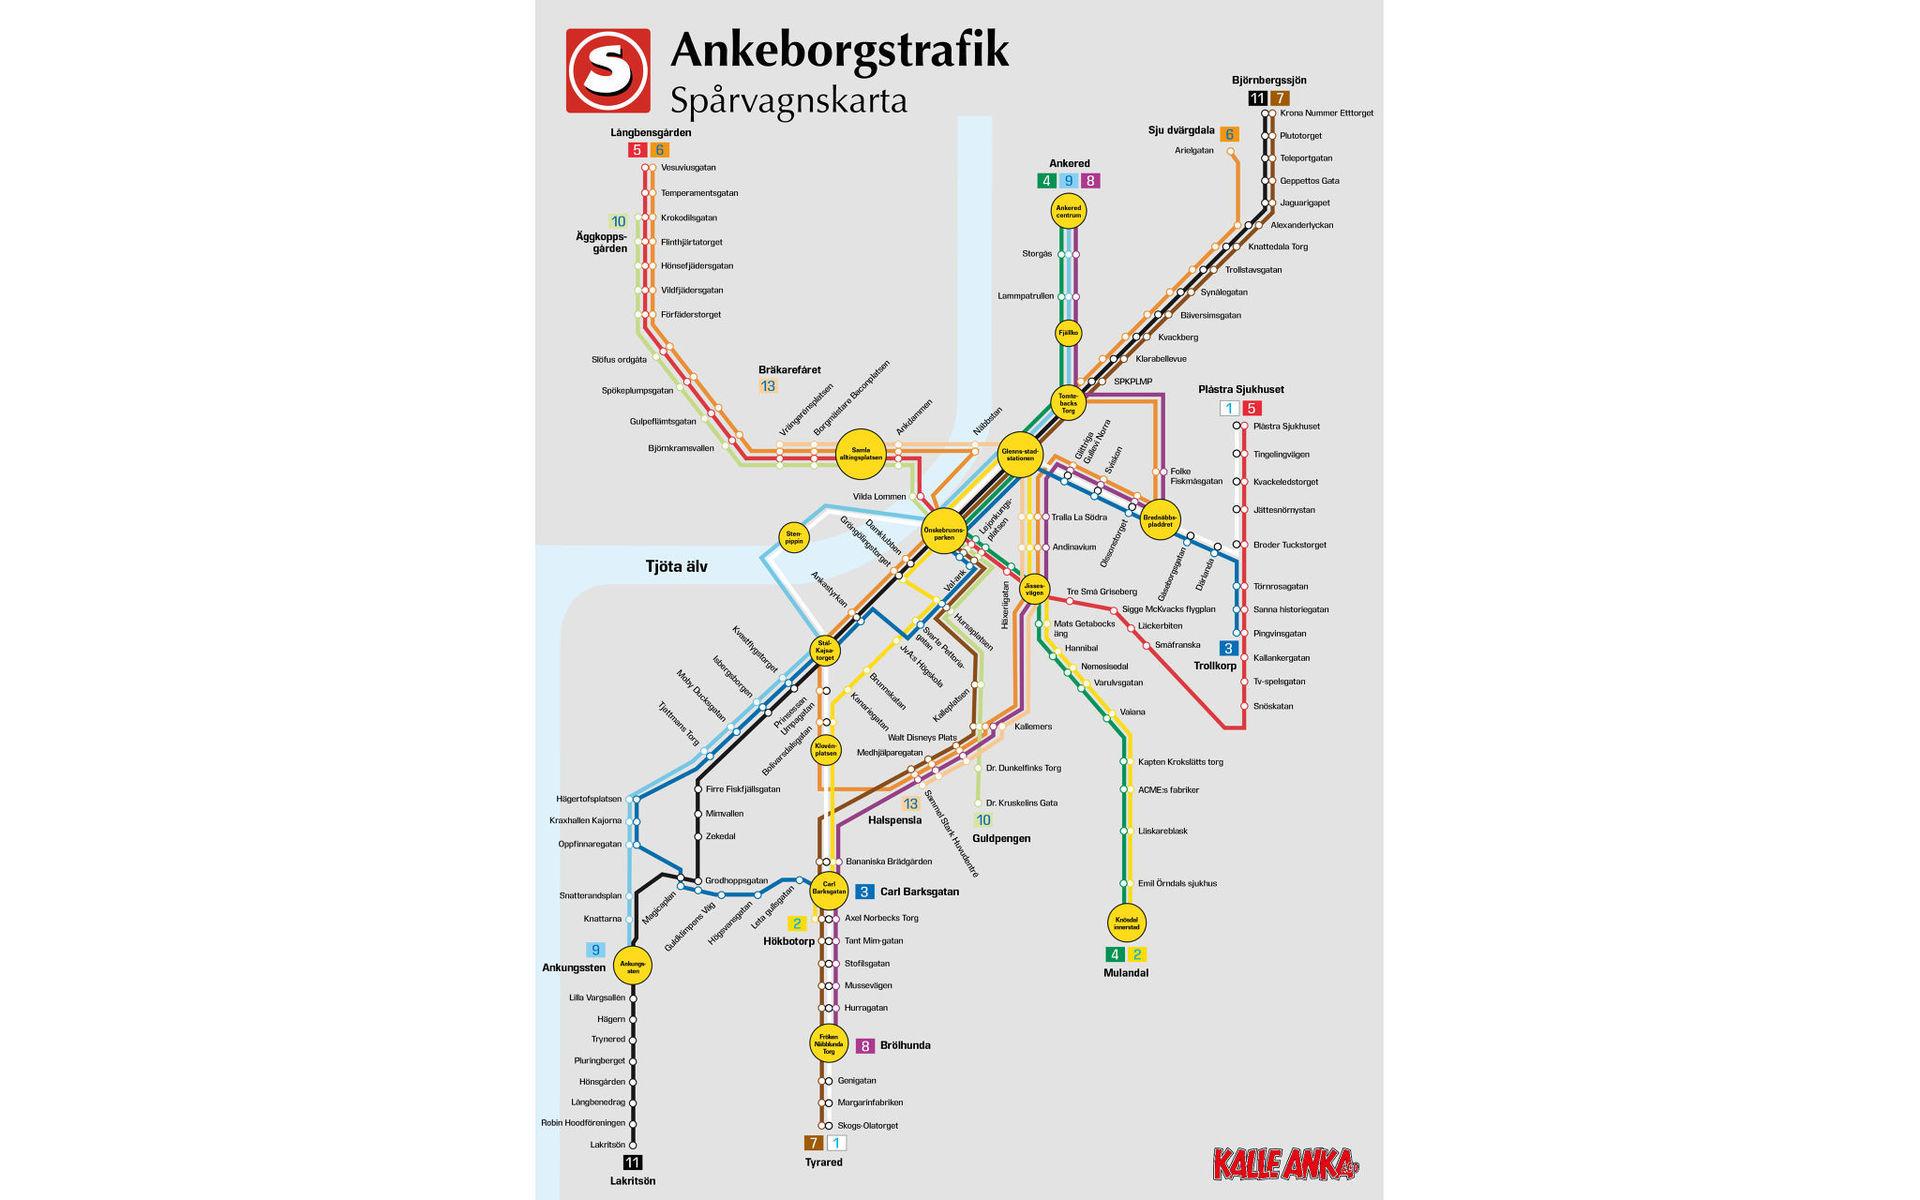 Spårvagnshållplatserna i Göteborg har blivit &quot;ankifierade&quot;. En större version av kartan finns längre ner i artikeln.